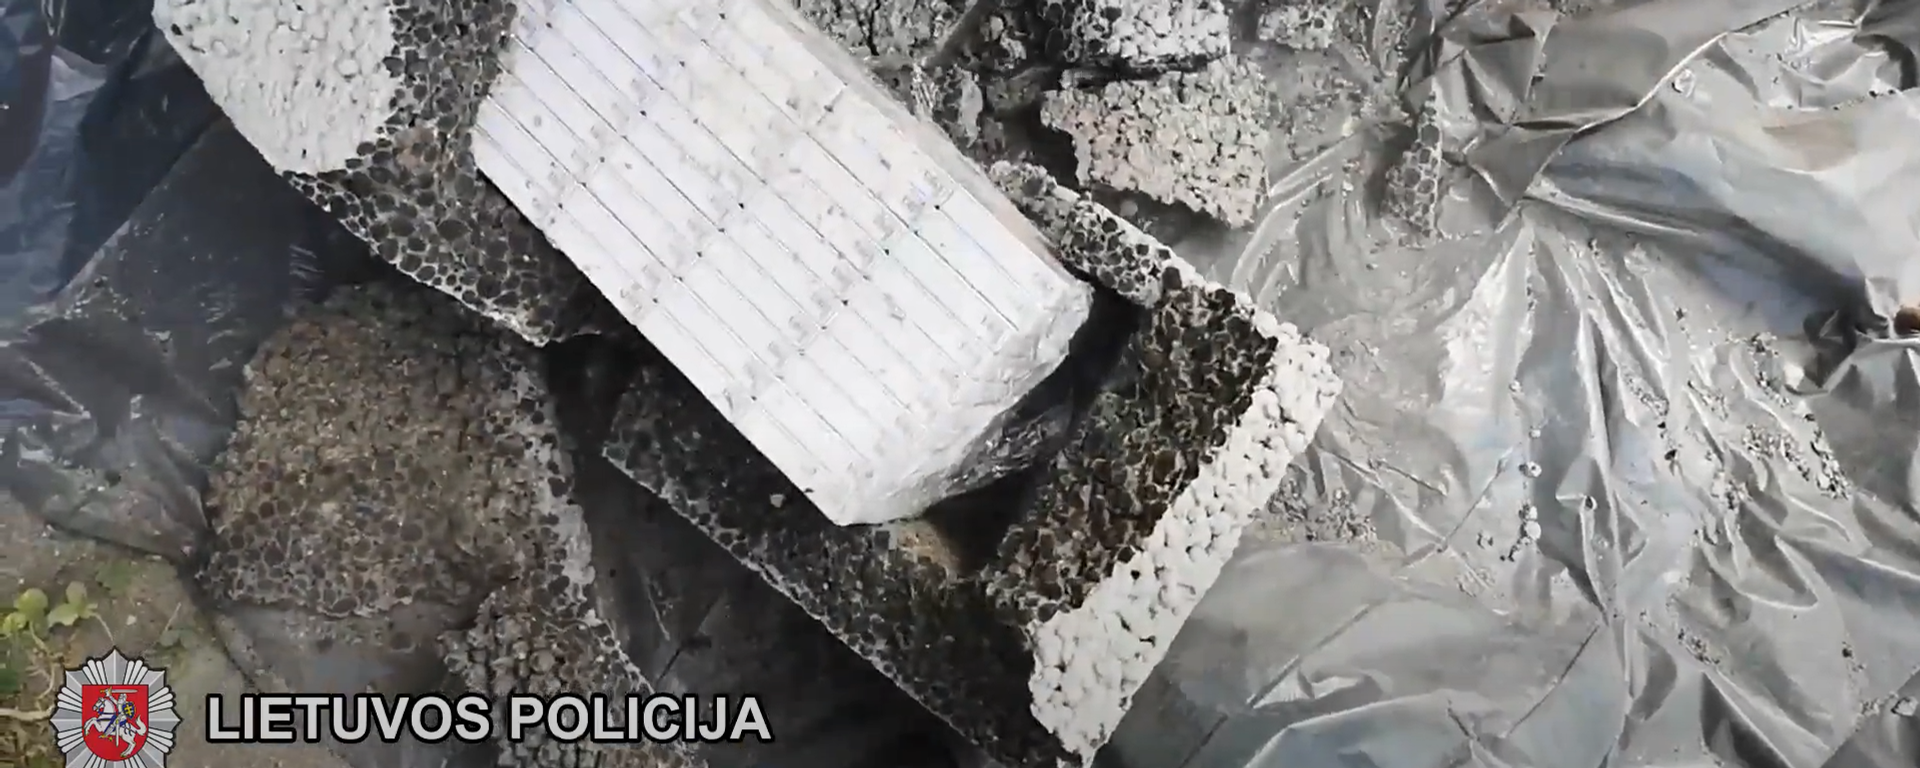 Полиция Вильнюсского уезда обнаружила контрабандные сигареты в строительных блоках - Sputnik Lietuva, 1920, 19.07.2021